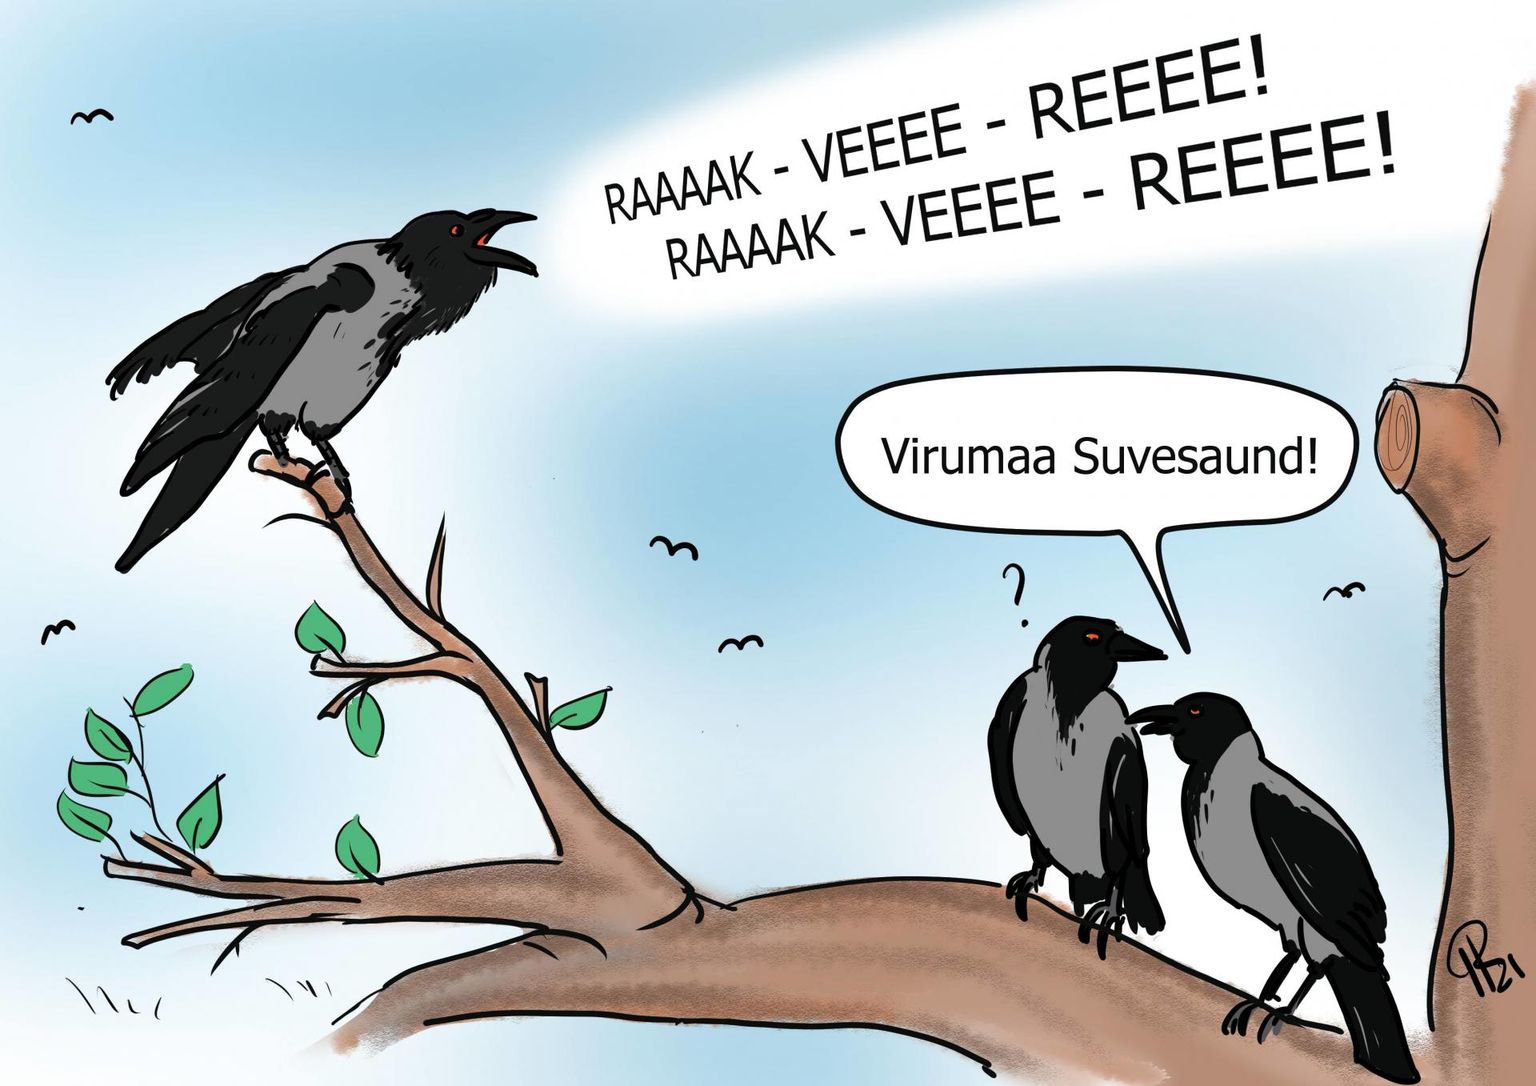 Nädala karikatuur "Virumaa Suvesaund".